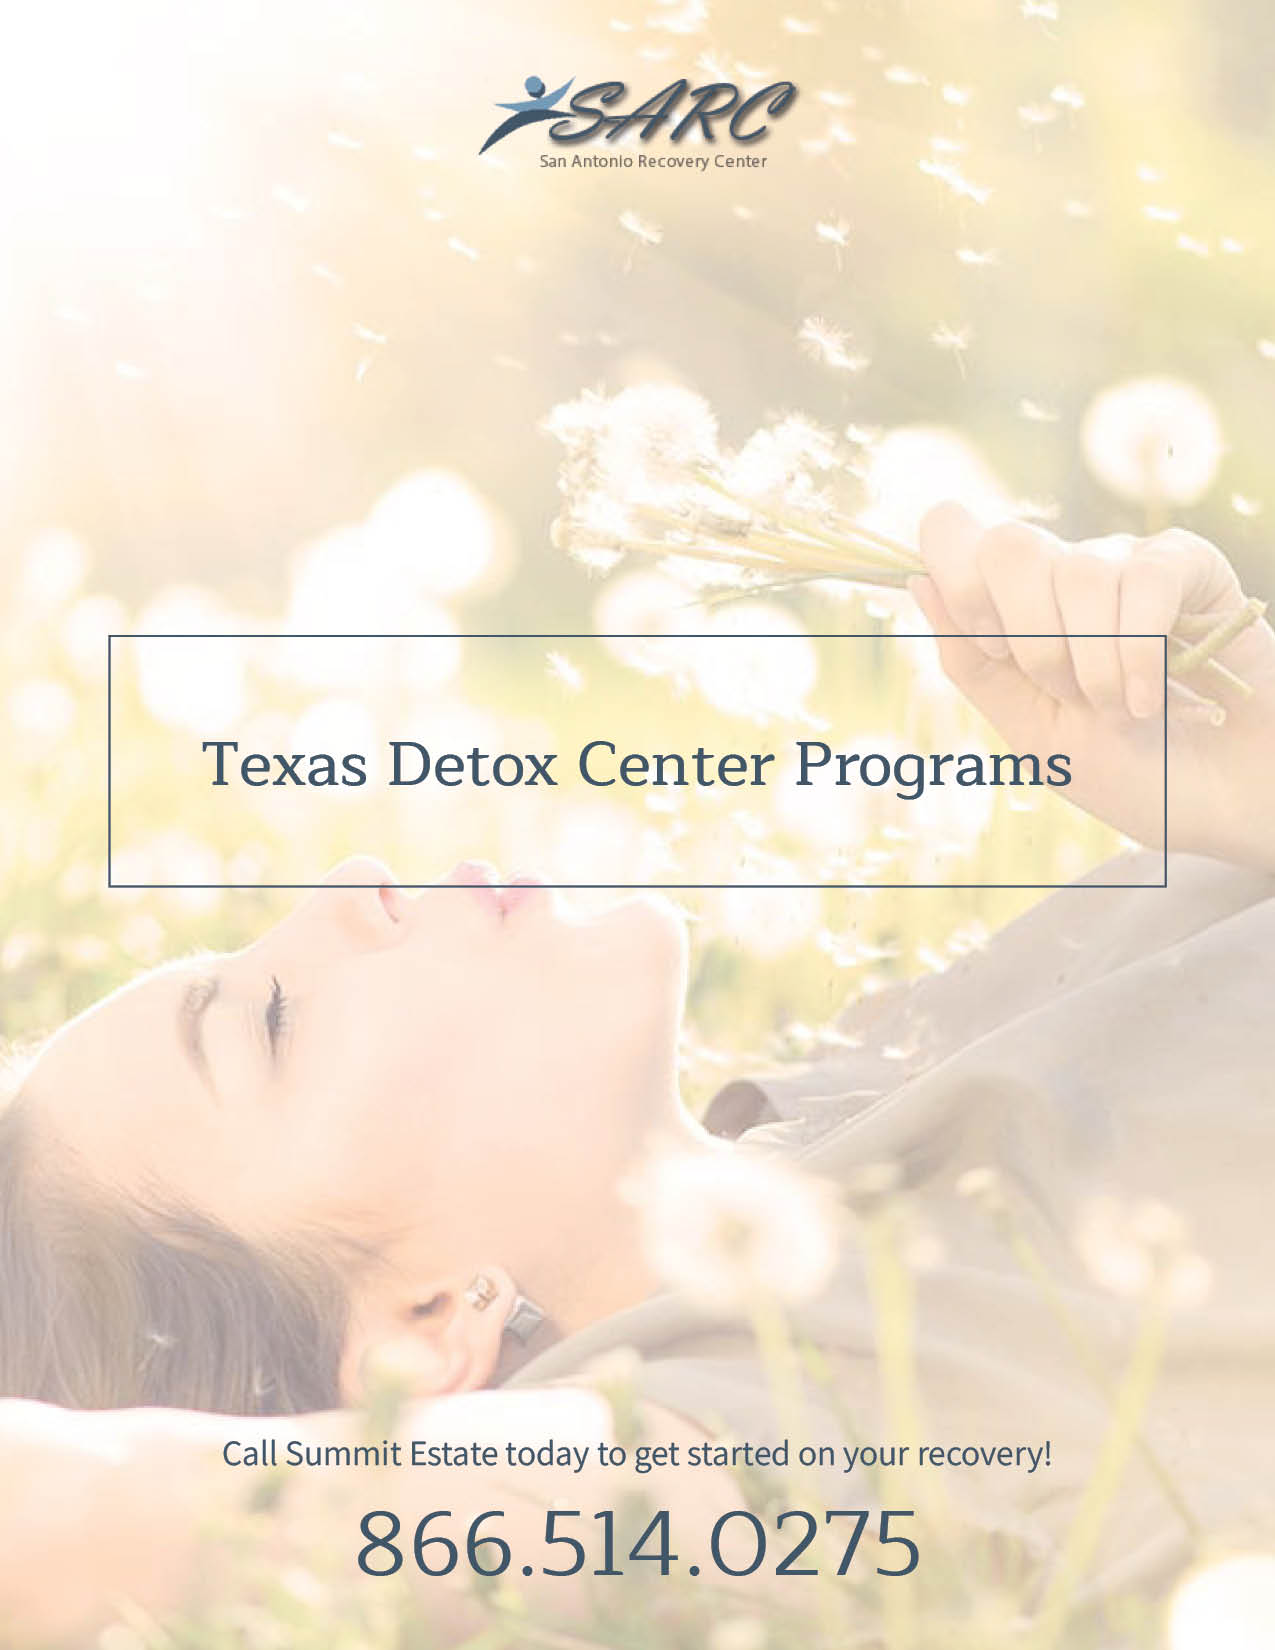 SARC Texas Detox Center Programs Cover